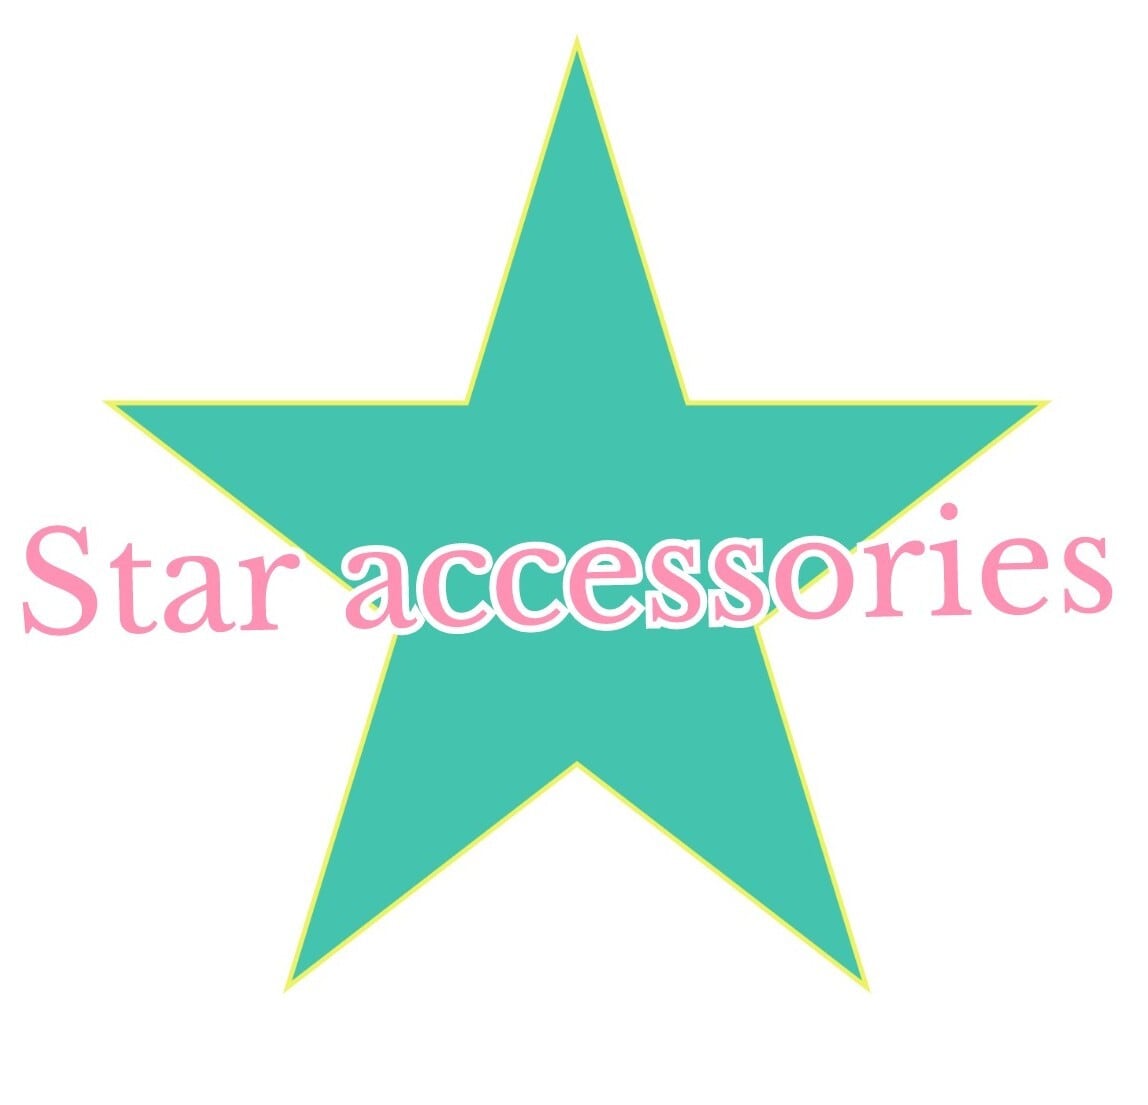 Star accessories